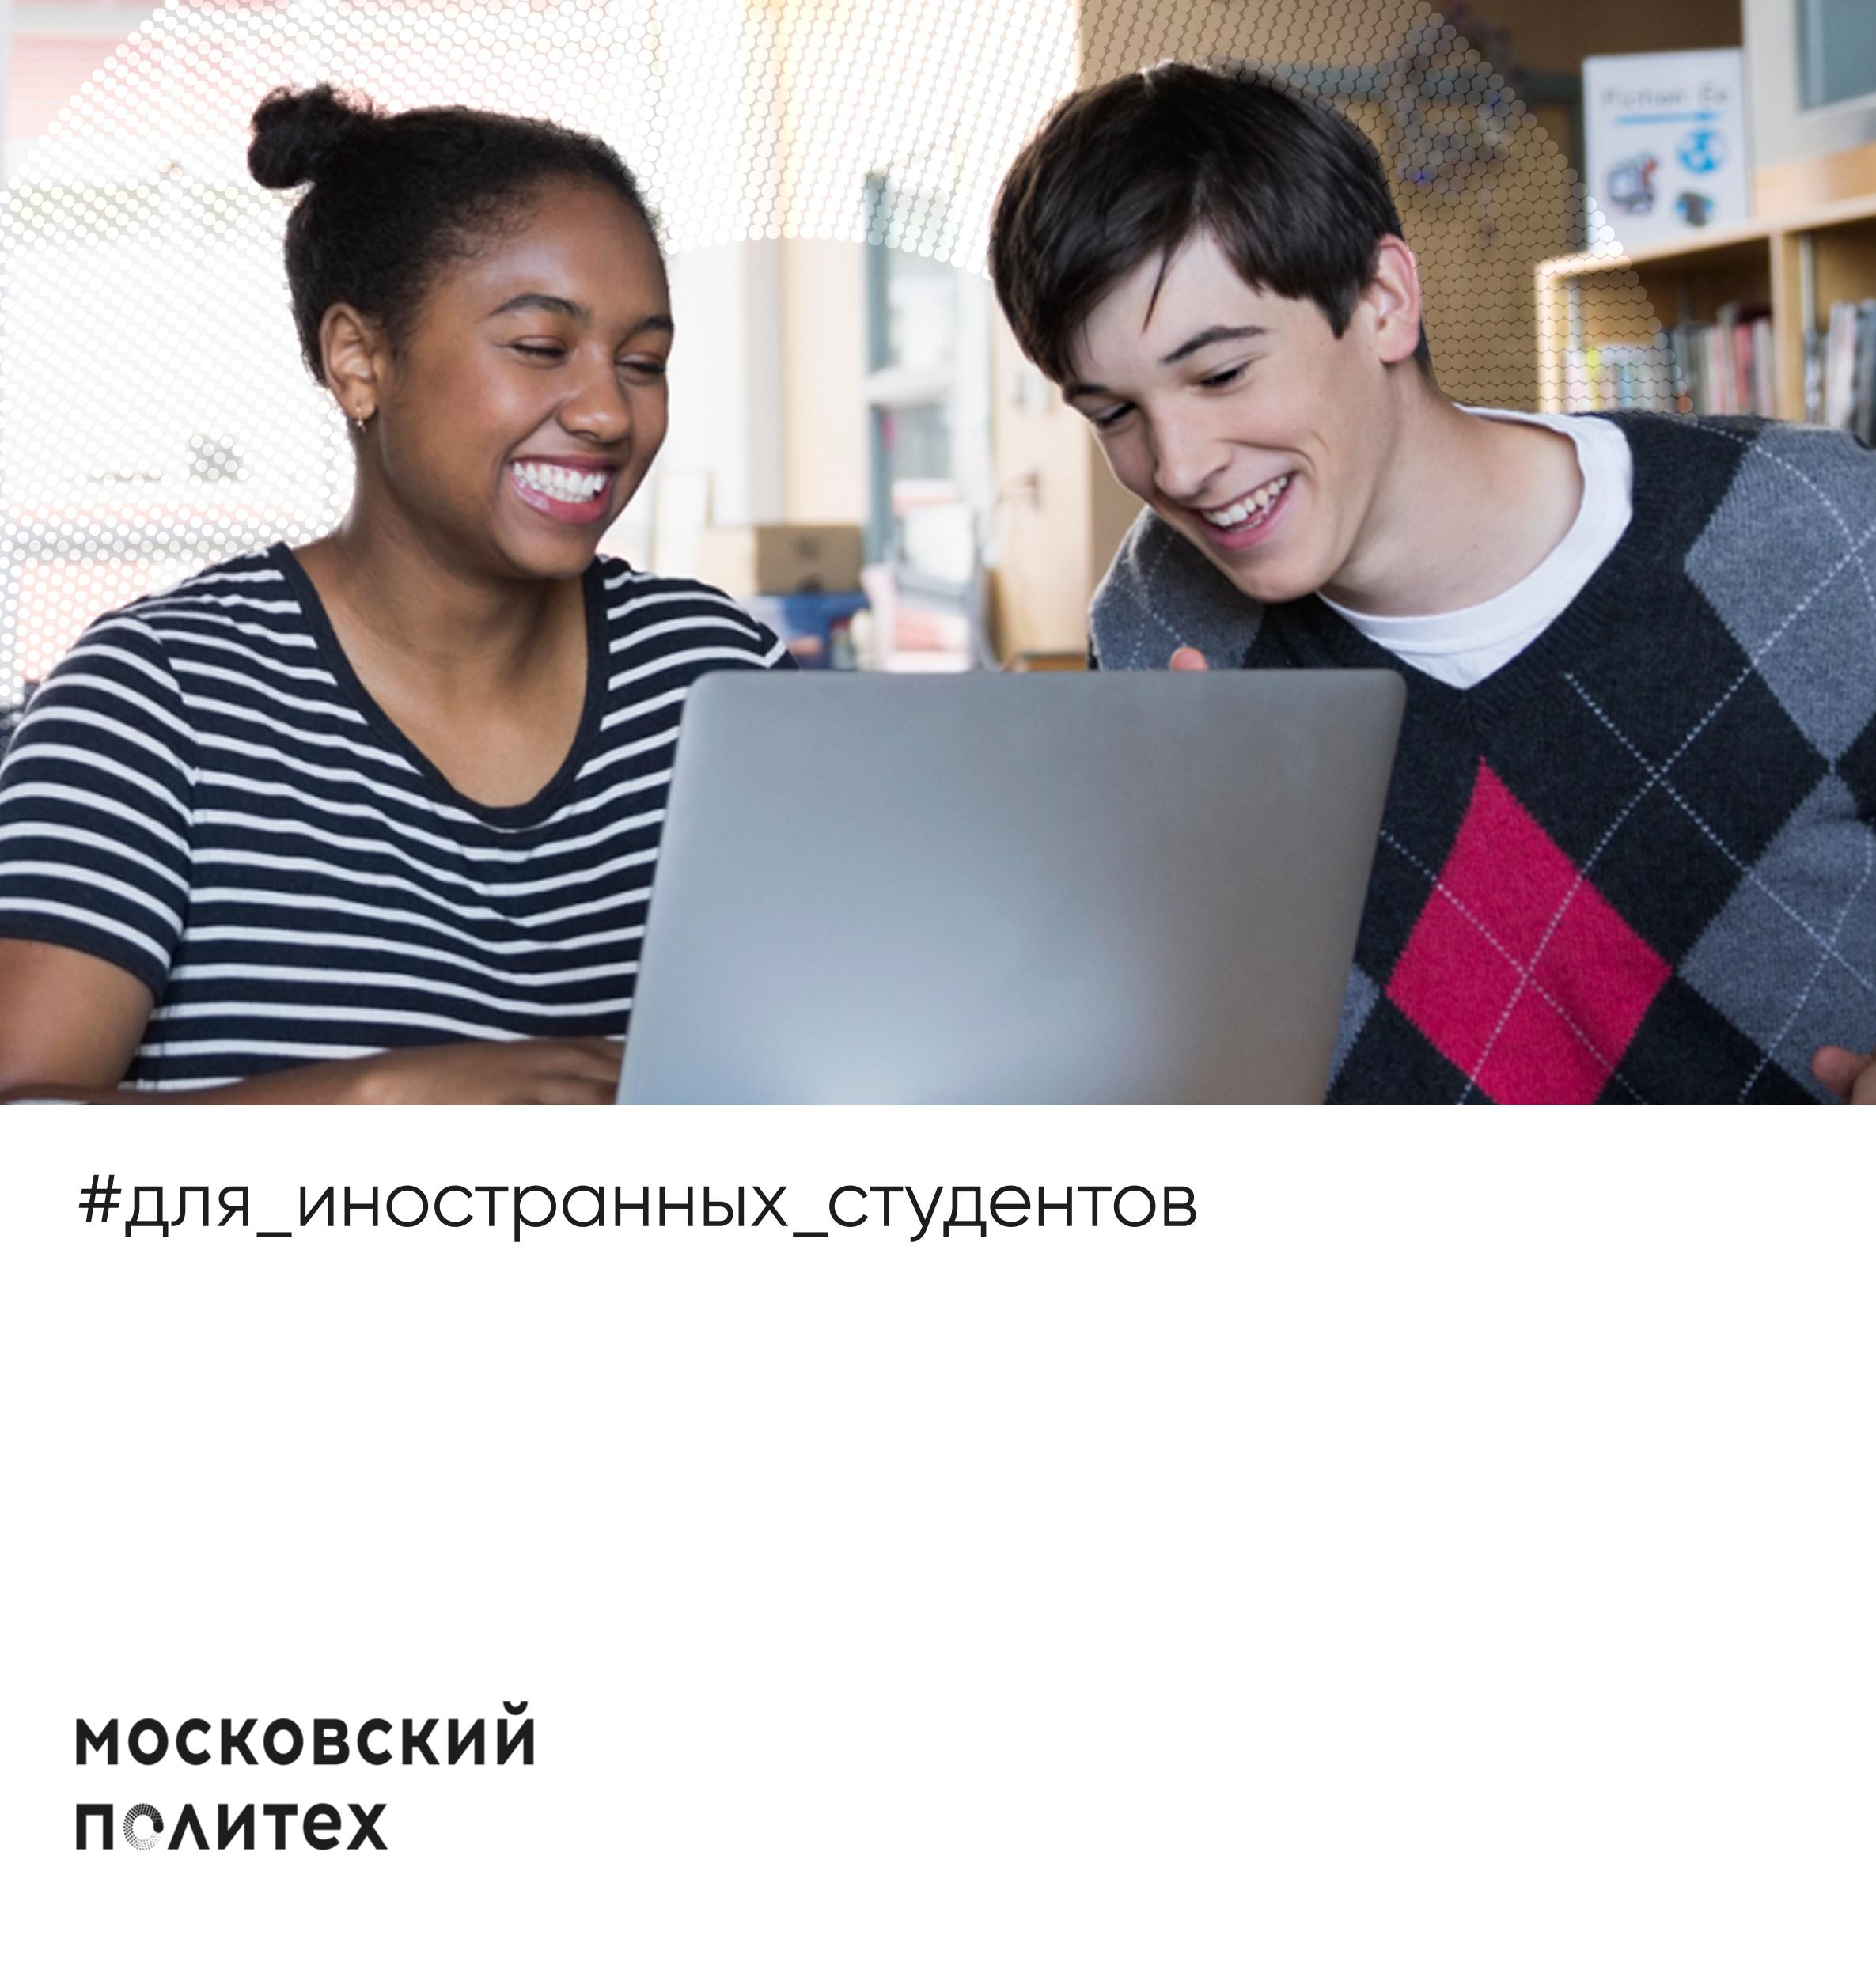 Московский Политех_для иностранных студентов